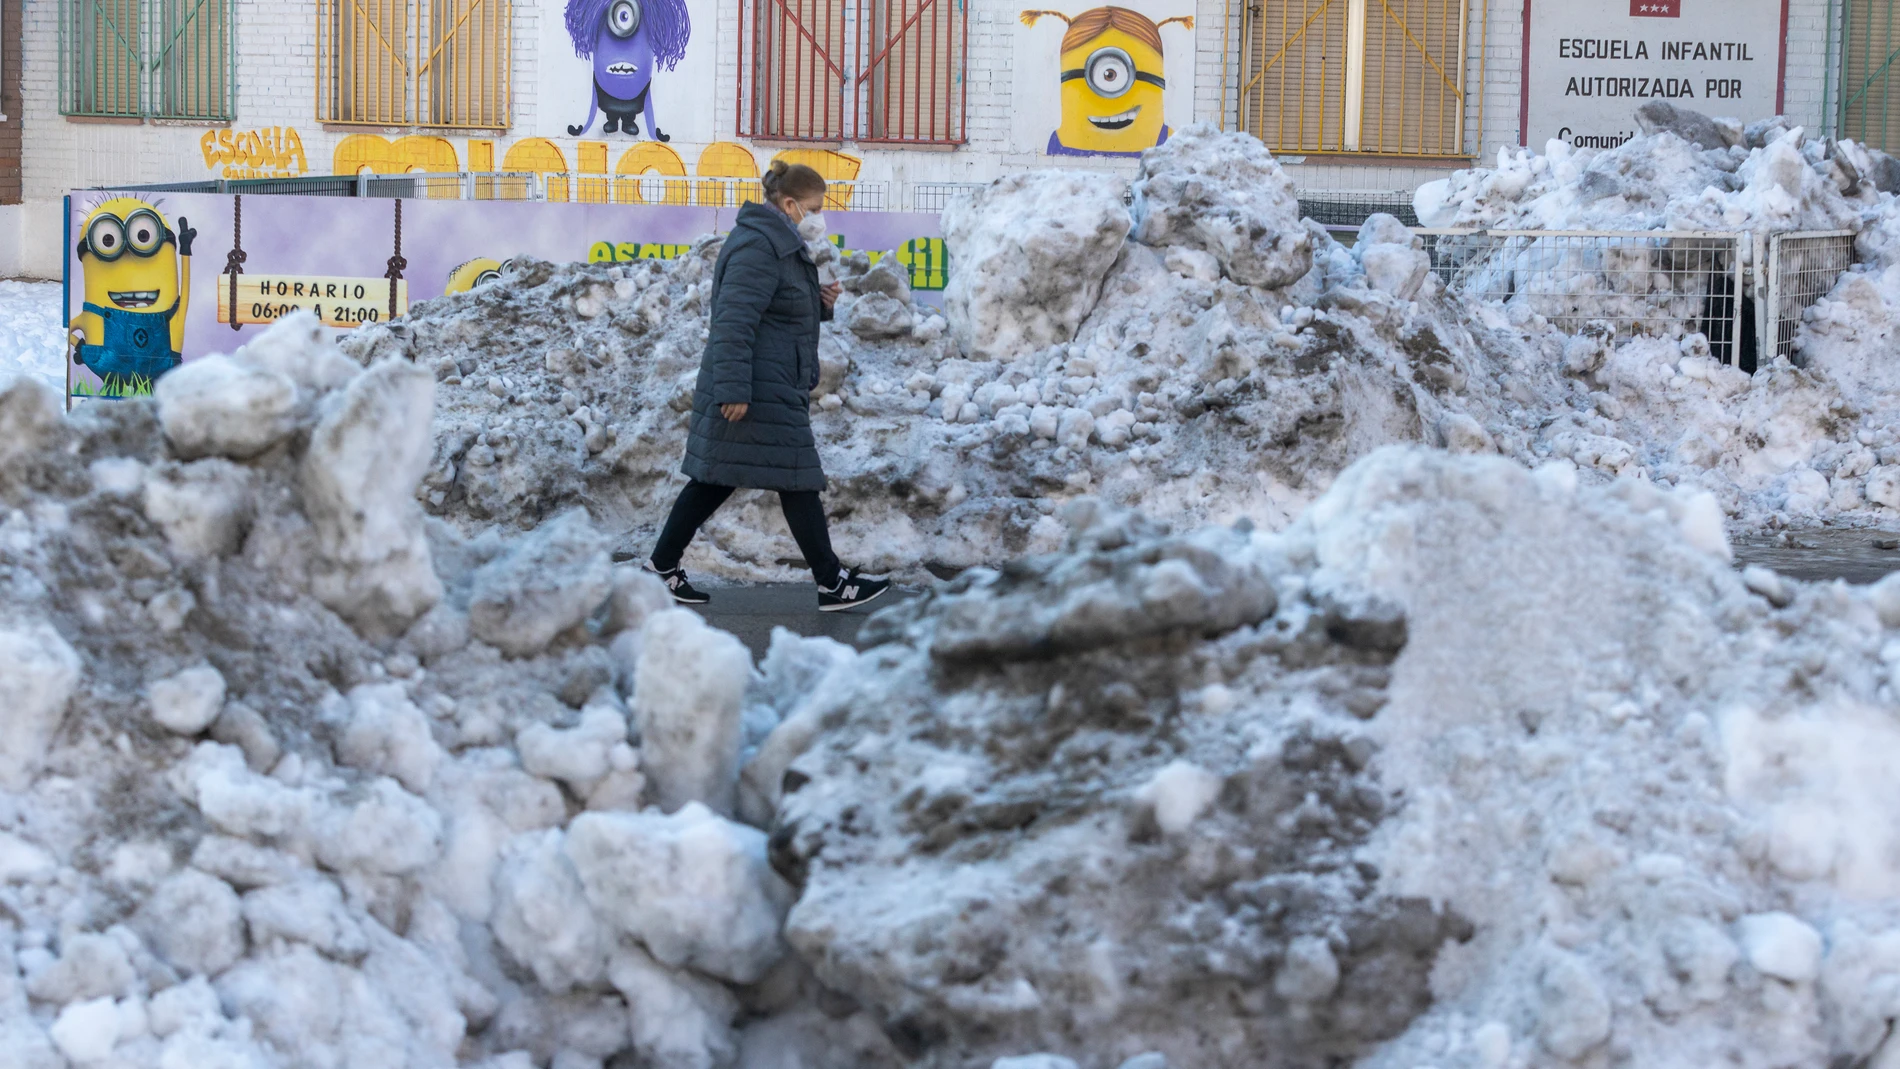 Montañas de hielo en Fuenlabrada, todo el término municipal queda sujeto a restricciones de movilidad a causa de la pandemia por Covid-19.